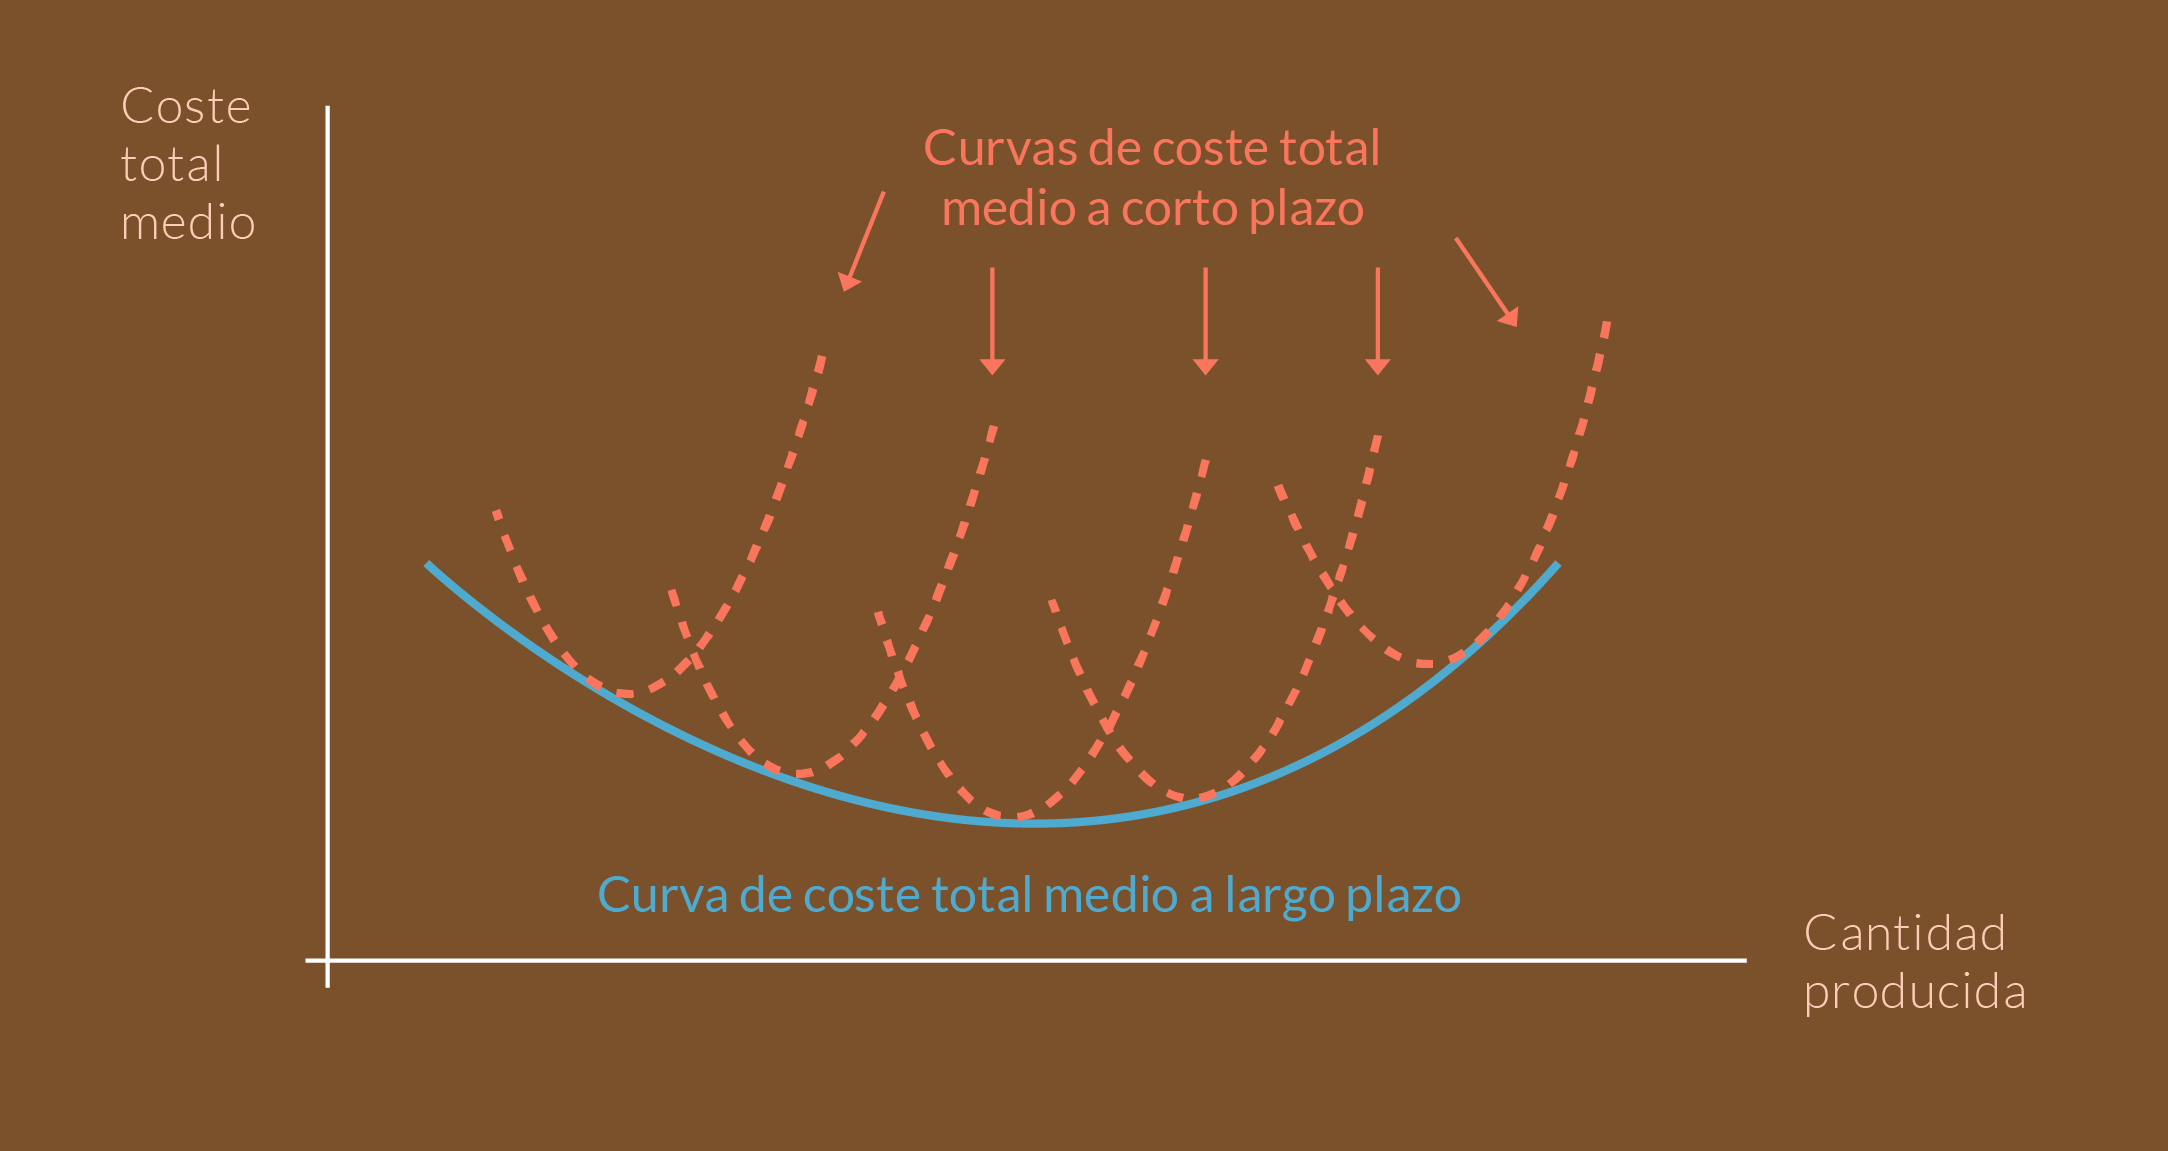 Gráfica que relaciona las curvas de costo total medio a corto plazo, con la curva de costo total medio a largo plazo.